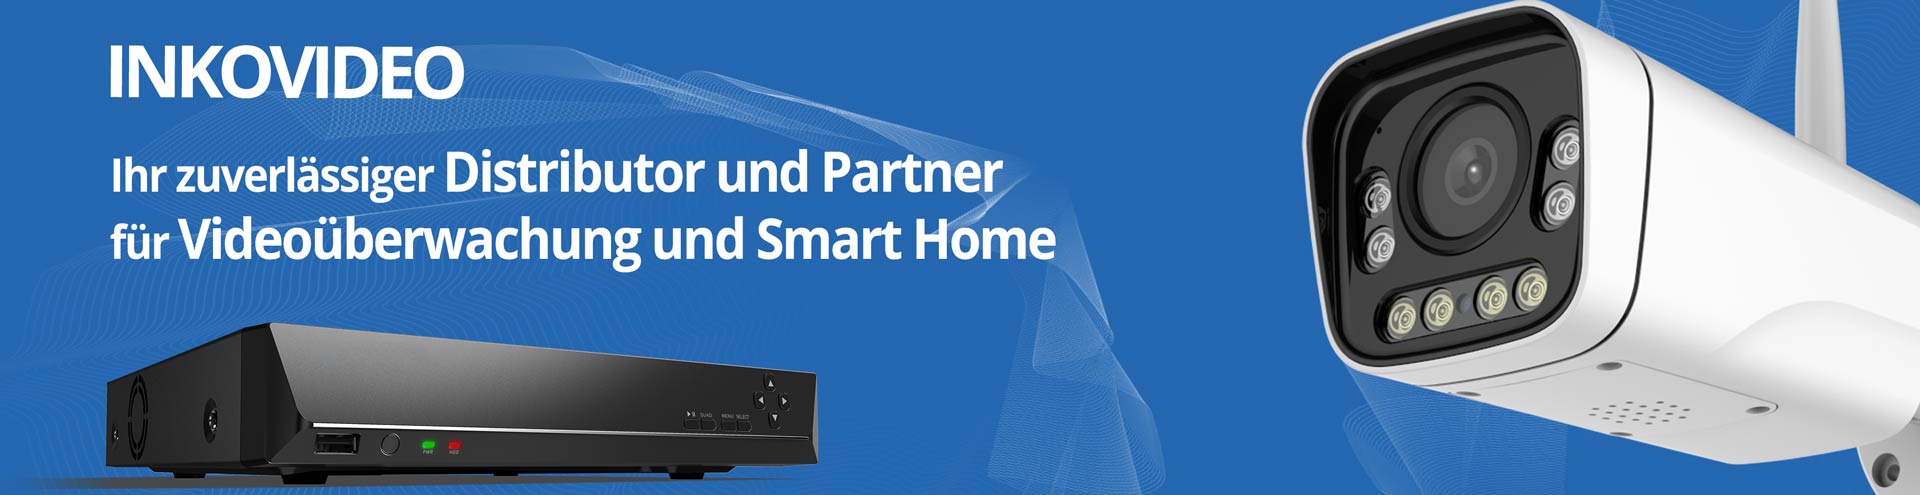 INKOVIDEO: Ihr zuverlässiger Distributor und Partner für Videoüberwachung und Smart Home 